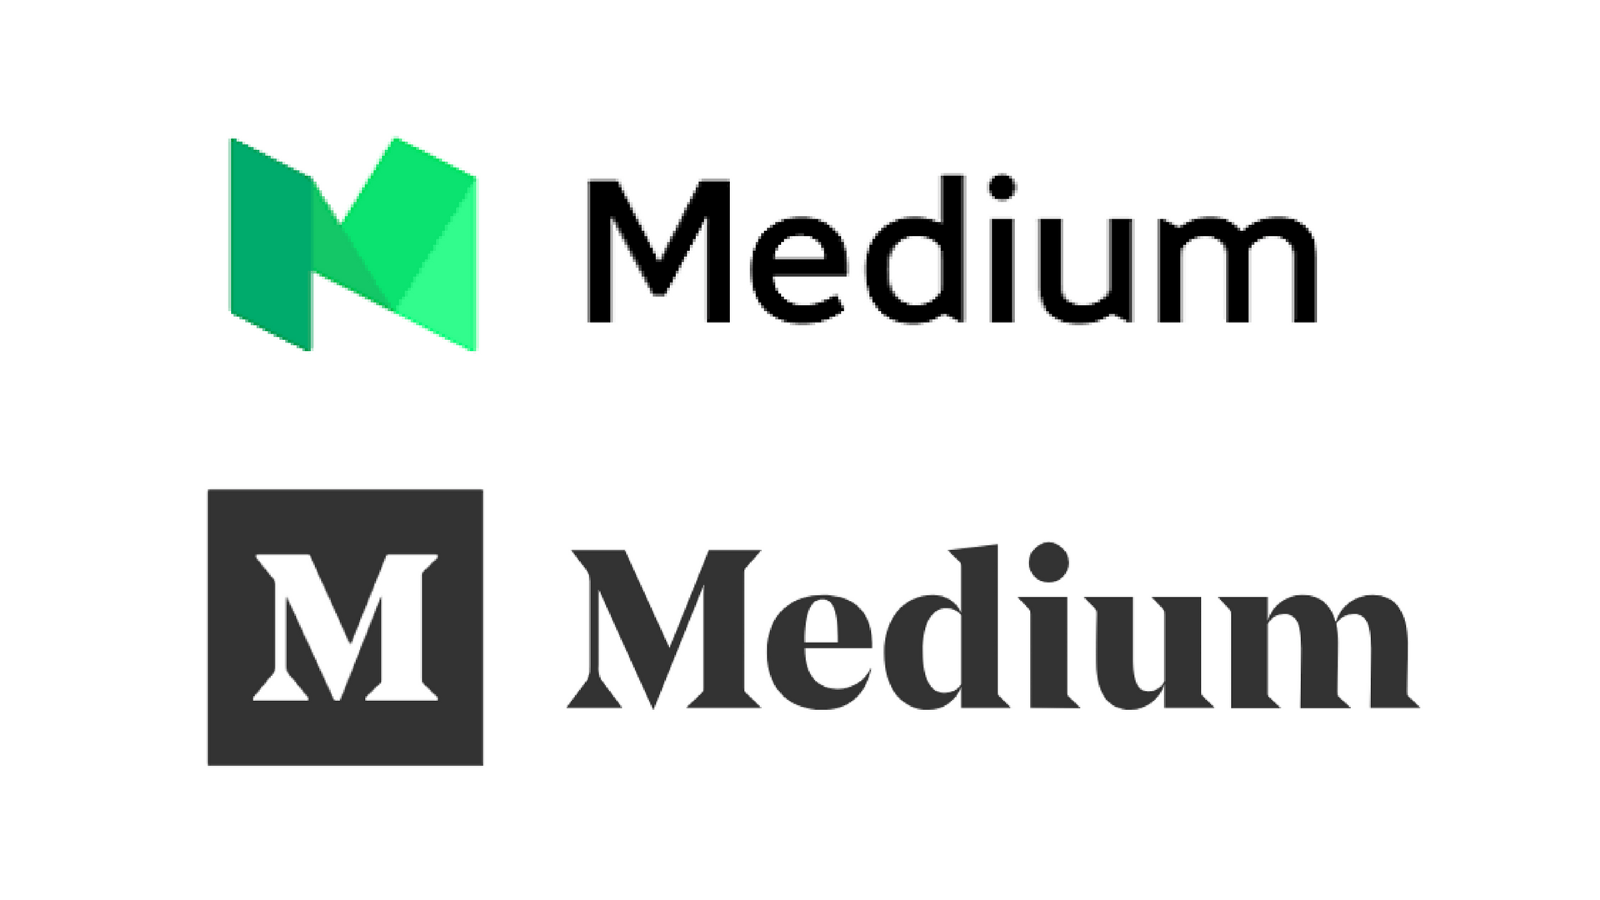 Medium Logo - Medium's new logo is punctilious